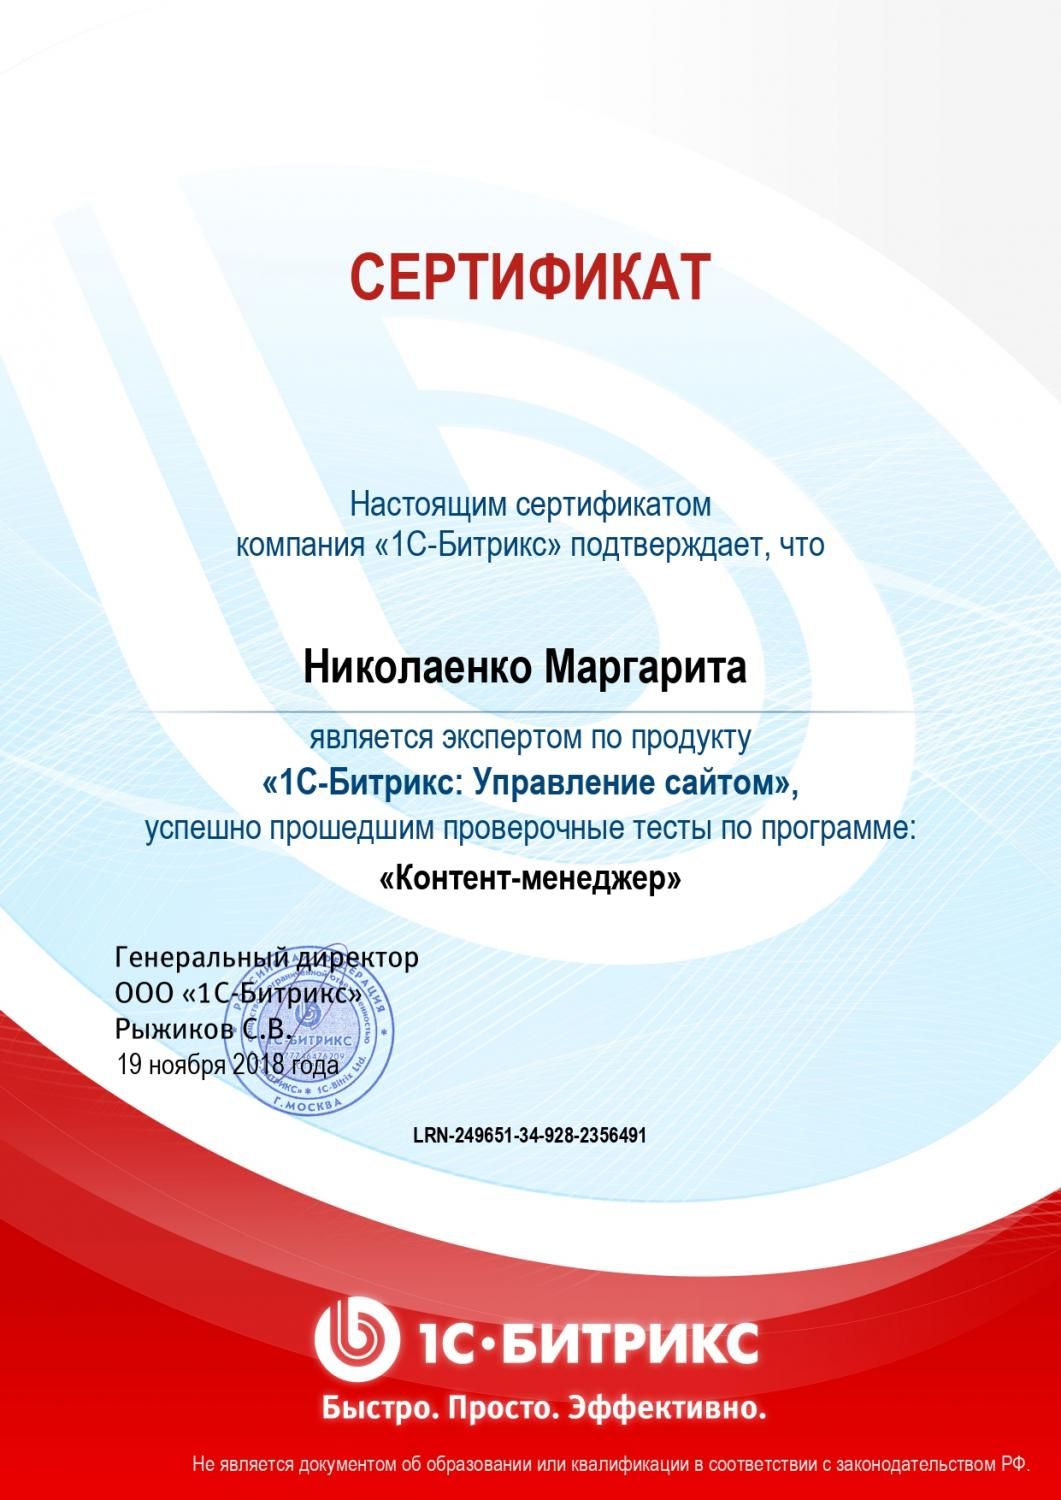 Сертификат эксперта по программе "Контент-менеджер" - Николаенко М. в Читы